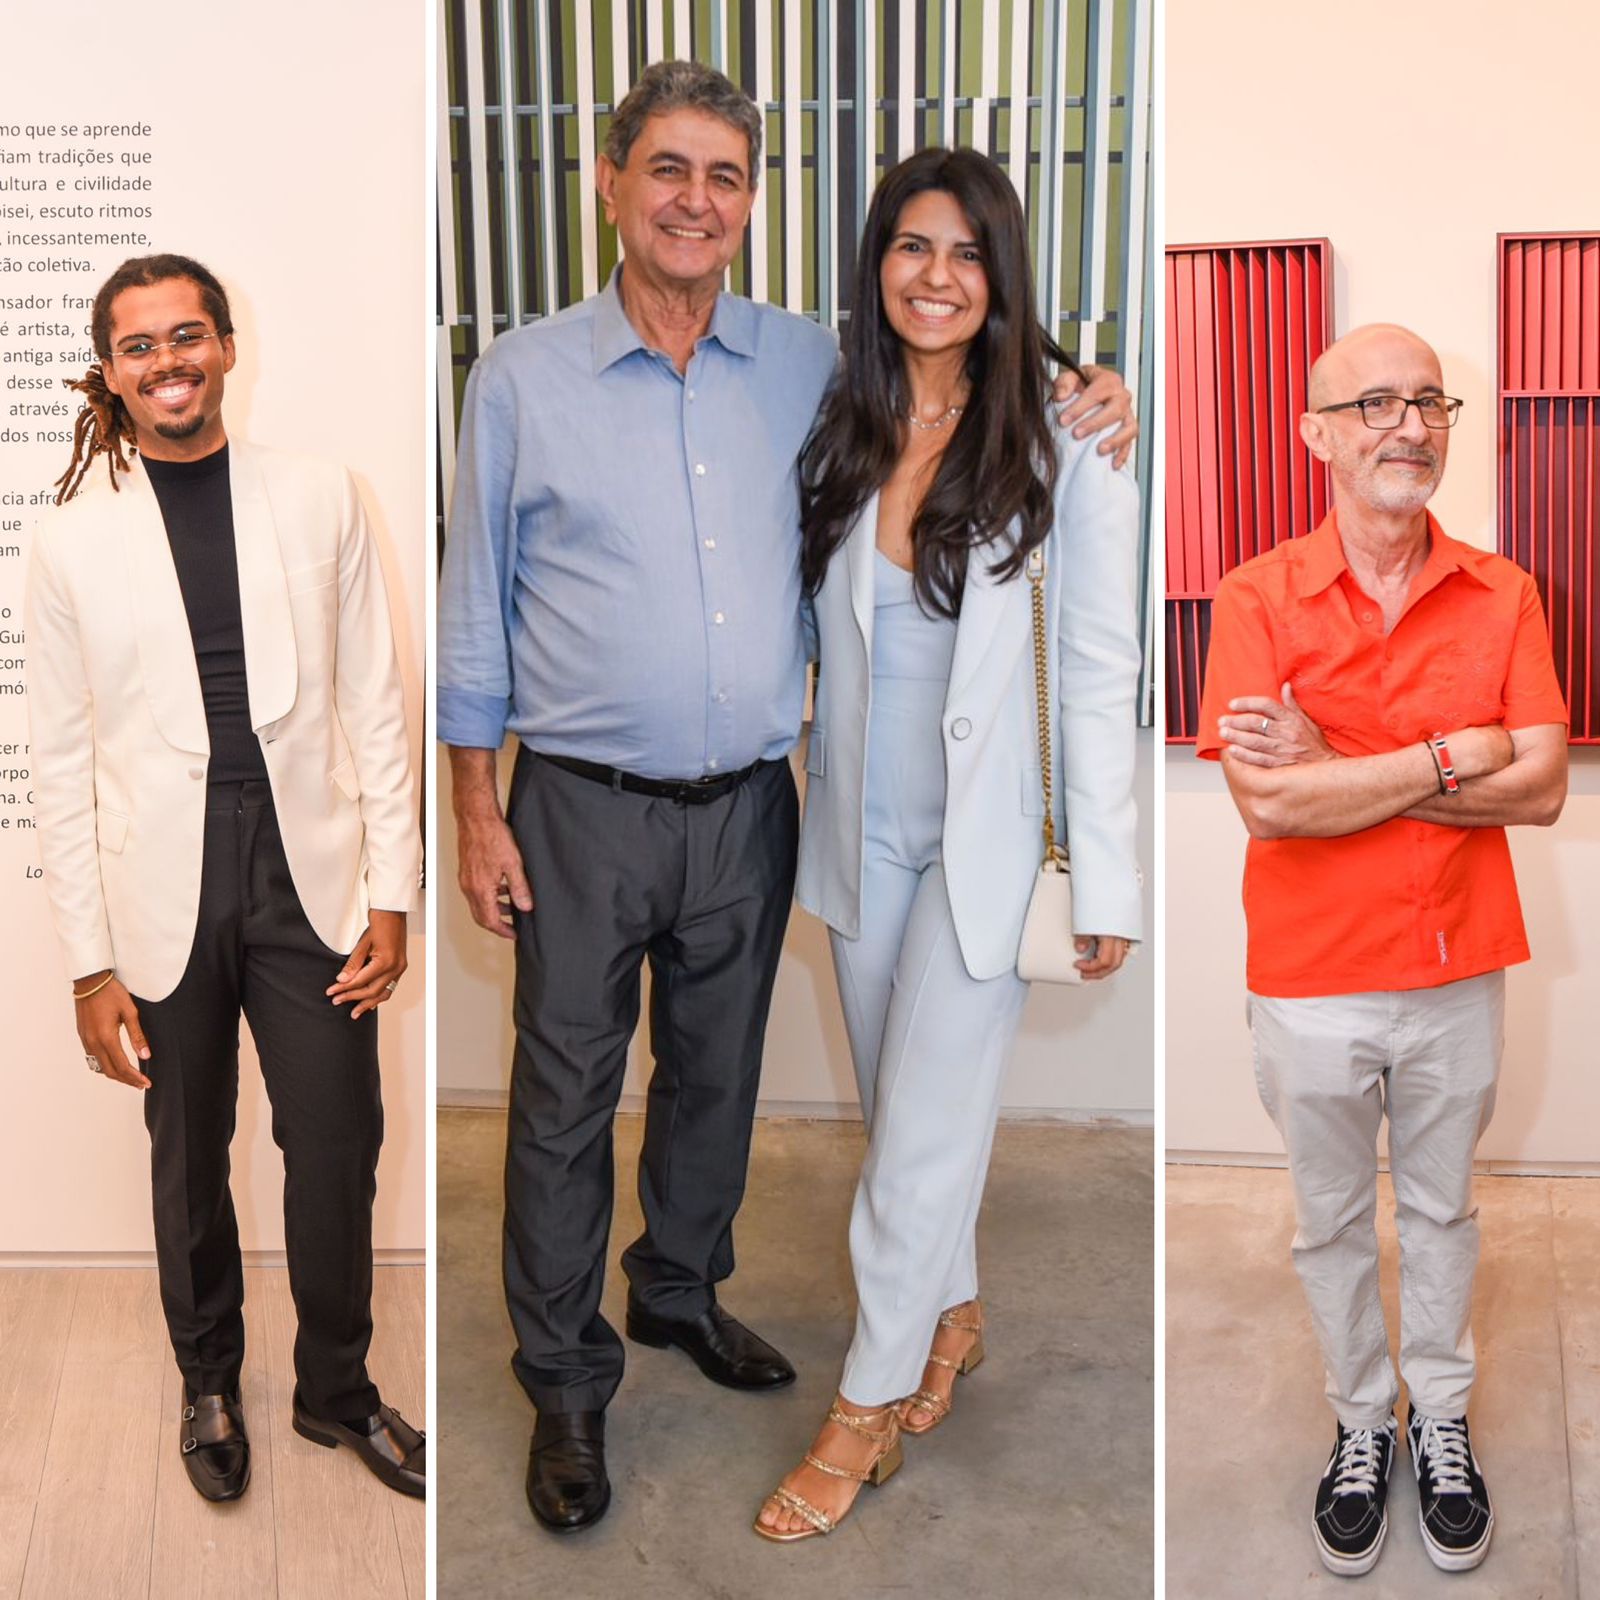 Paulo Darzé Galeria movimenta cena artística de Salvador com abertura de duas exposições; veja fotos